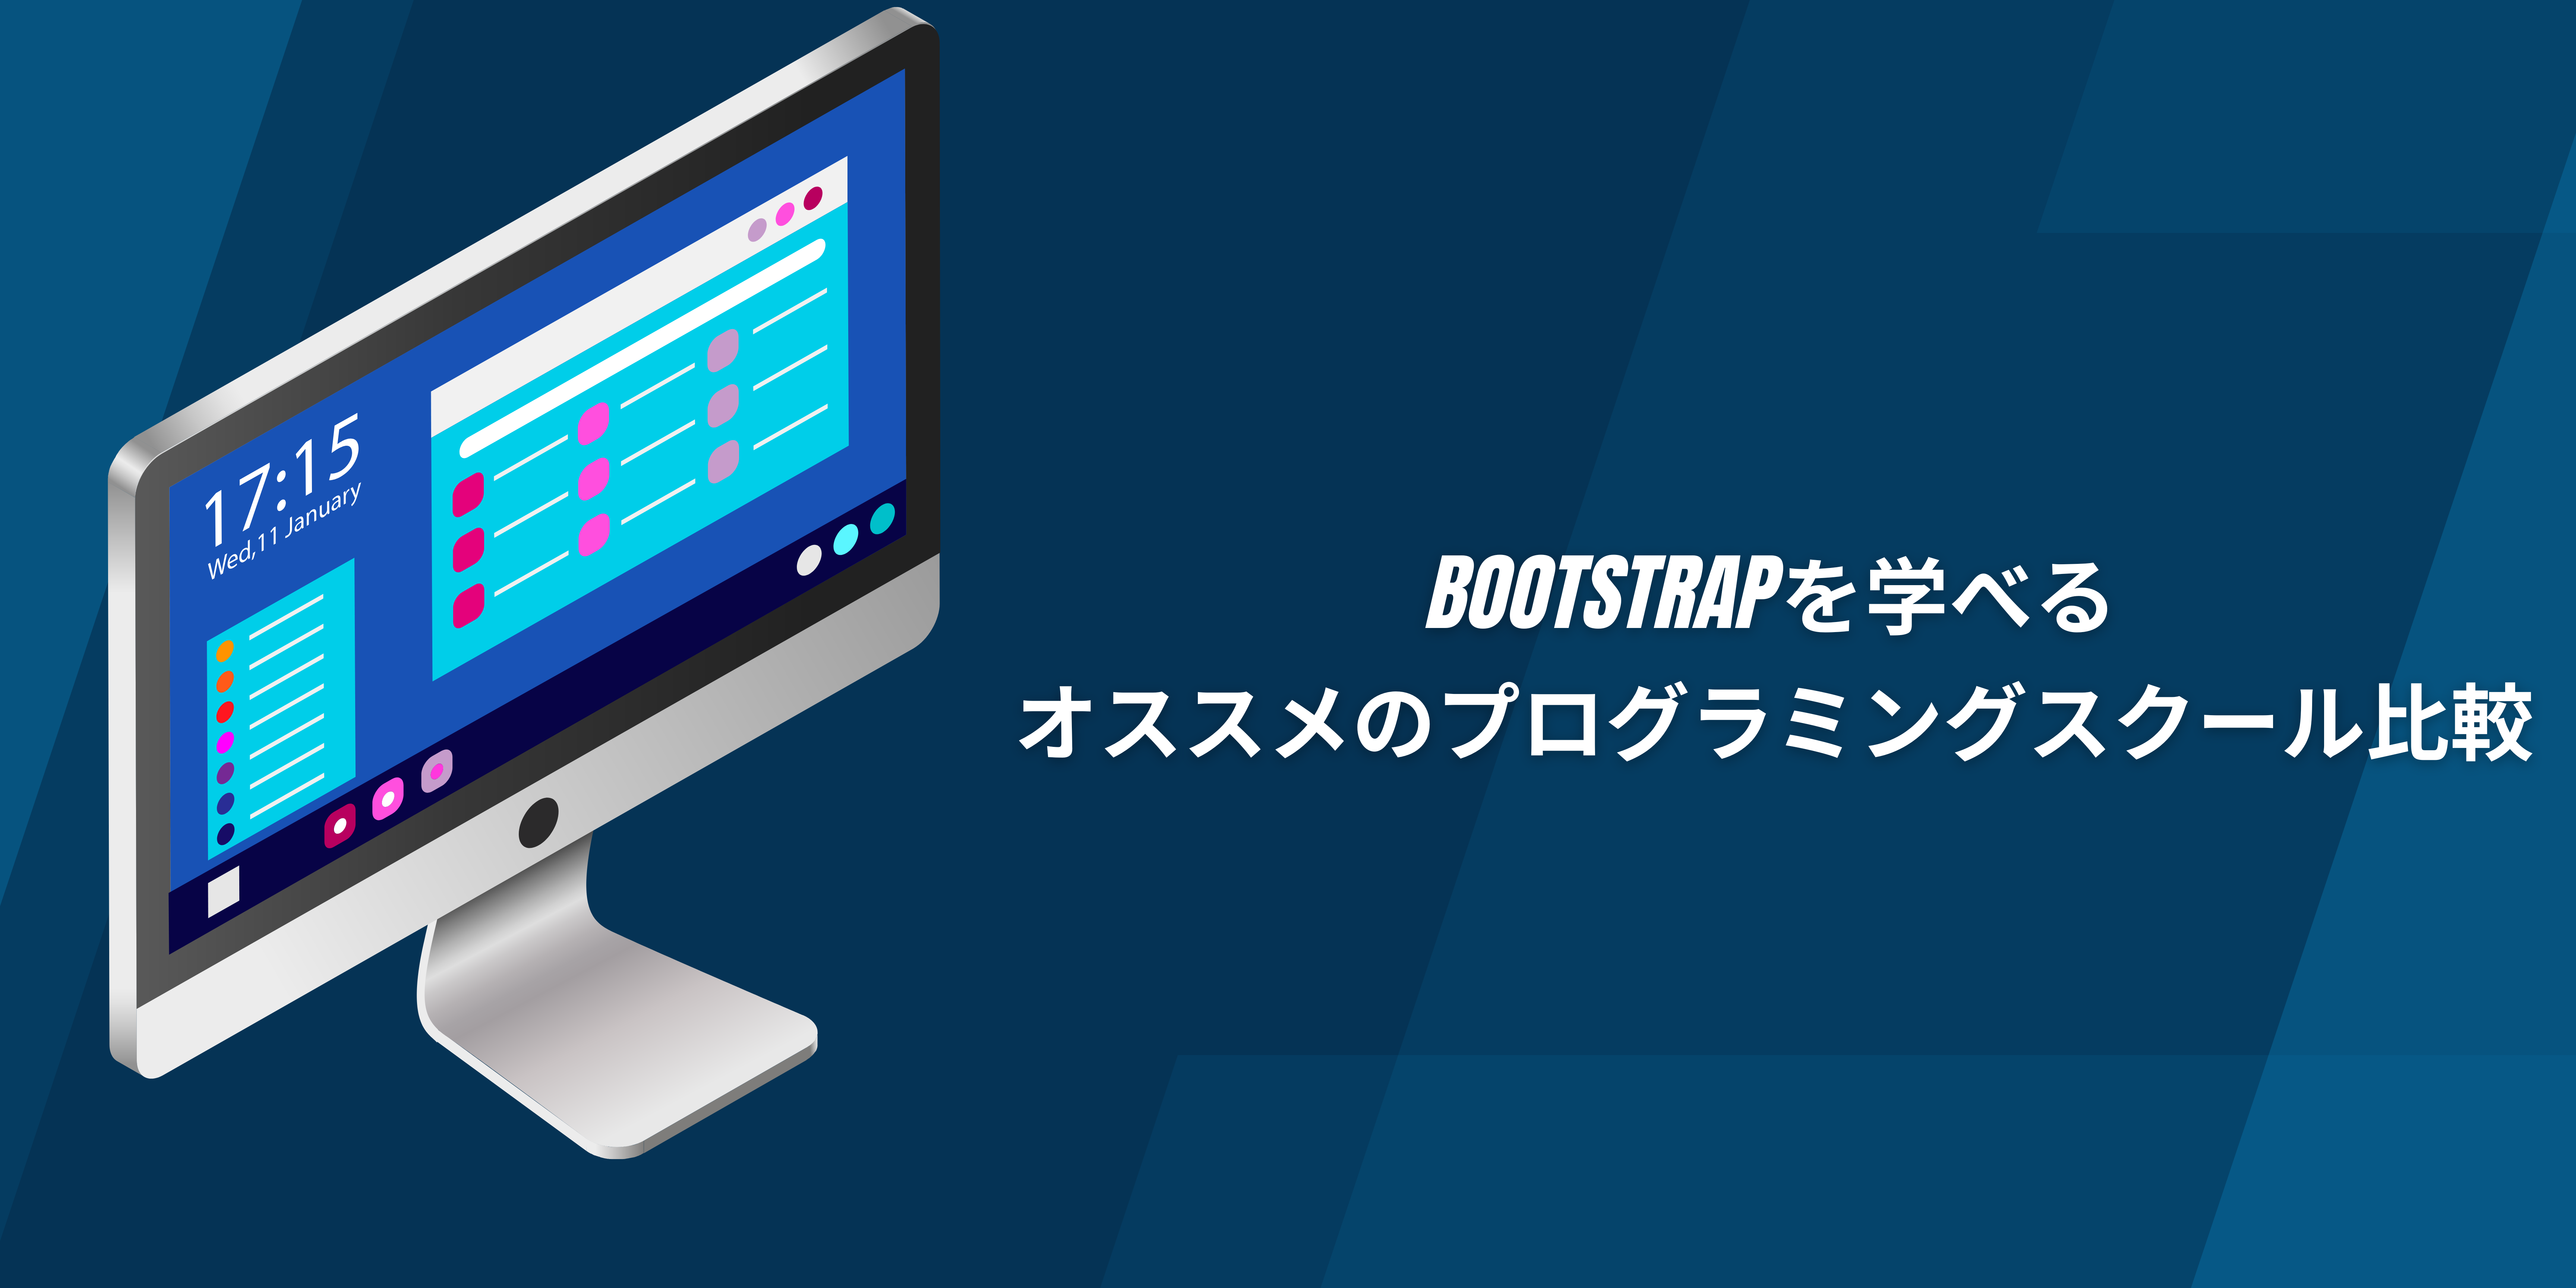 Bootstrapを学べるオススメのプログラミングスクール比較